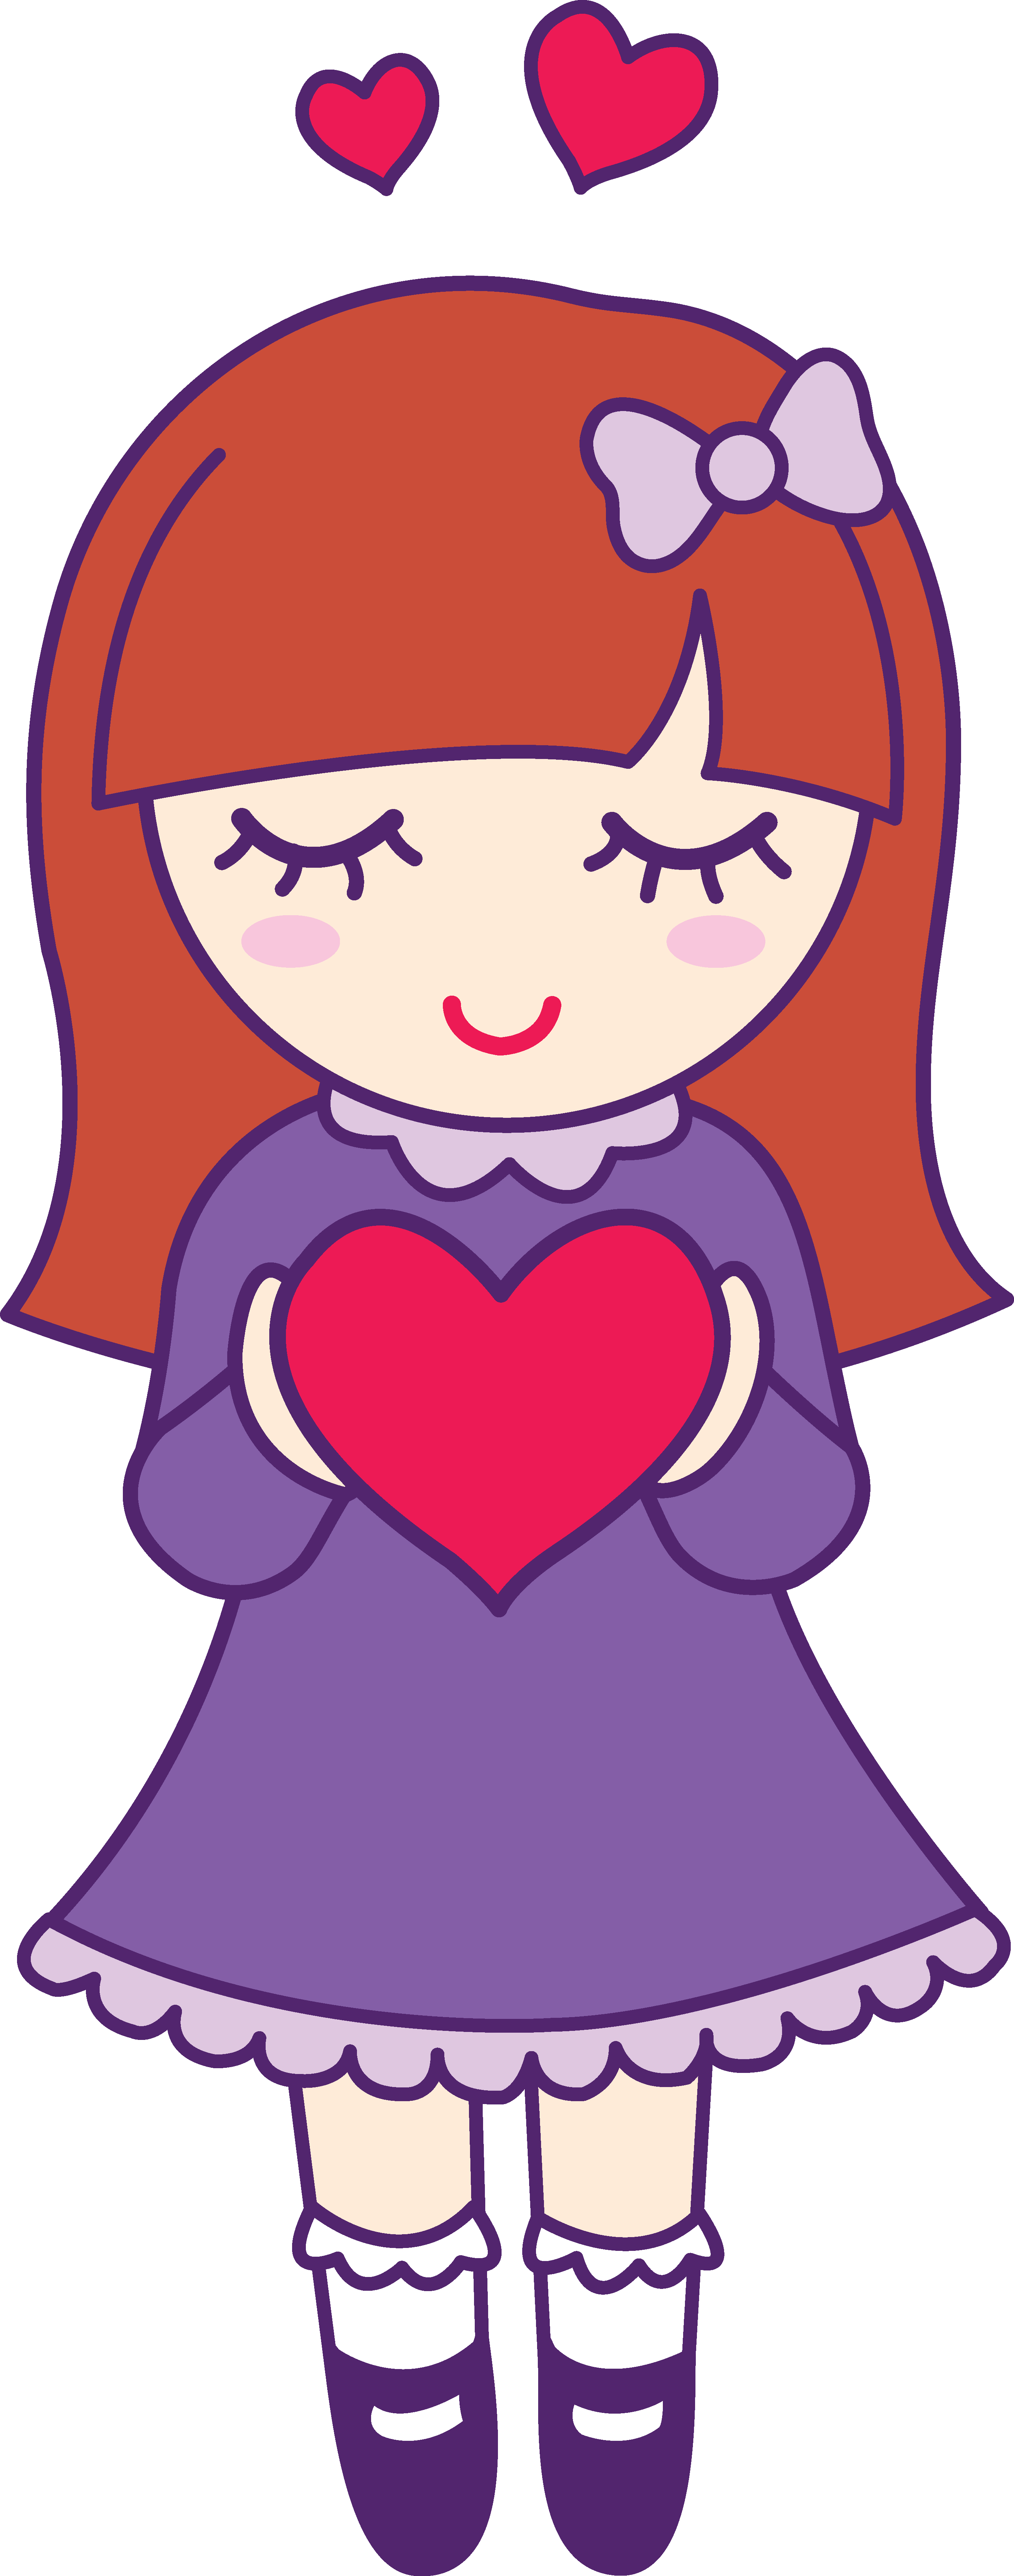 Hearts Clipart Girly - Hearts Clipart Girly (2798x7107)